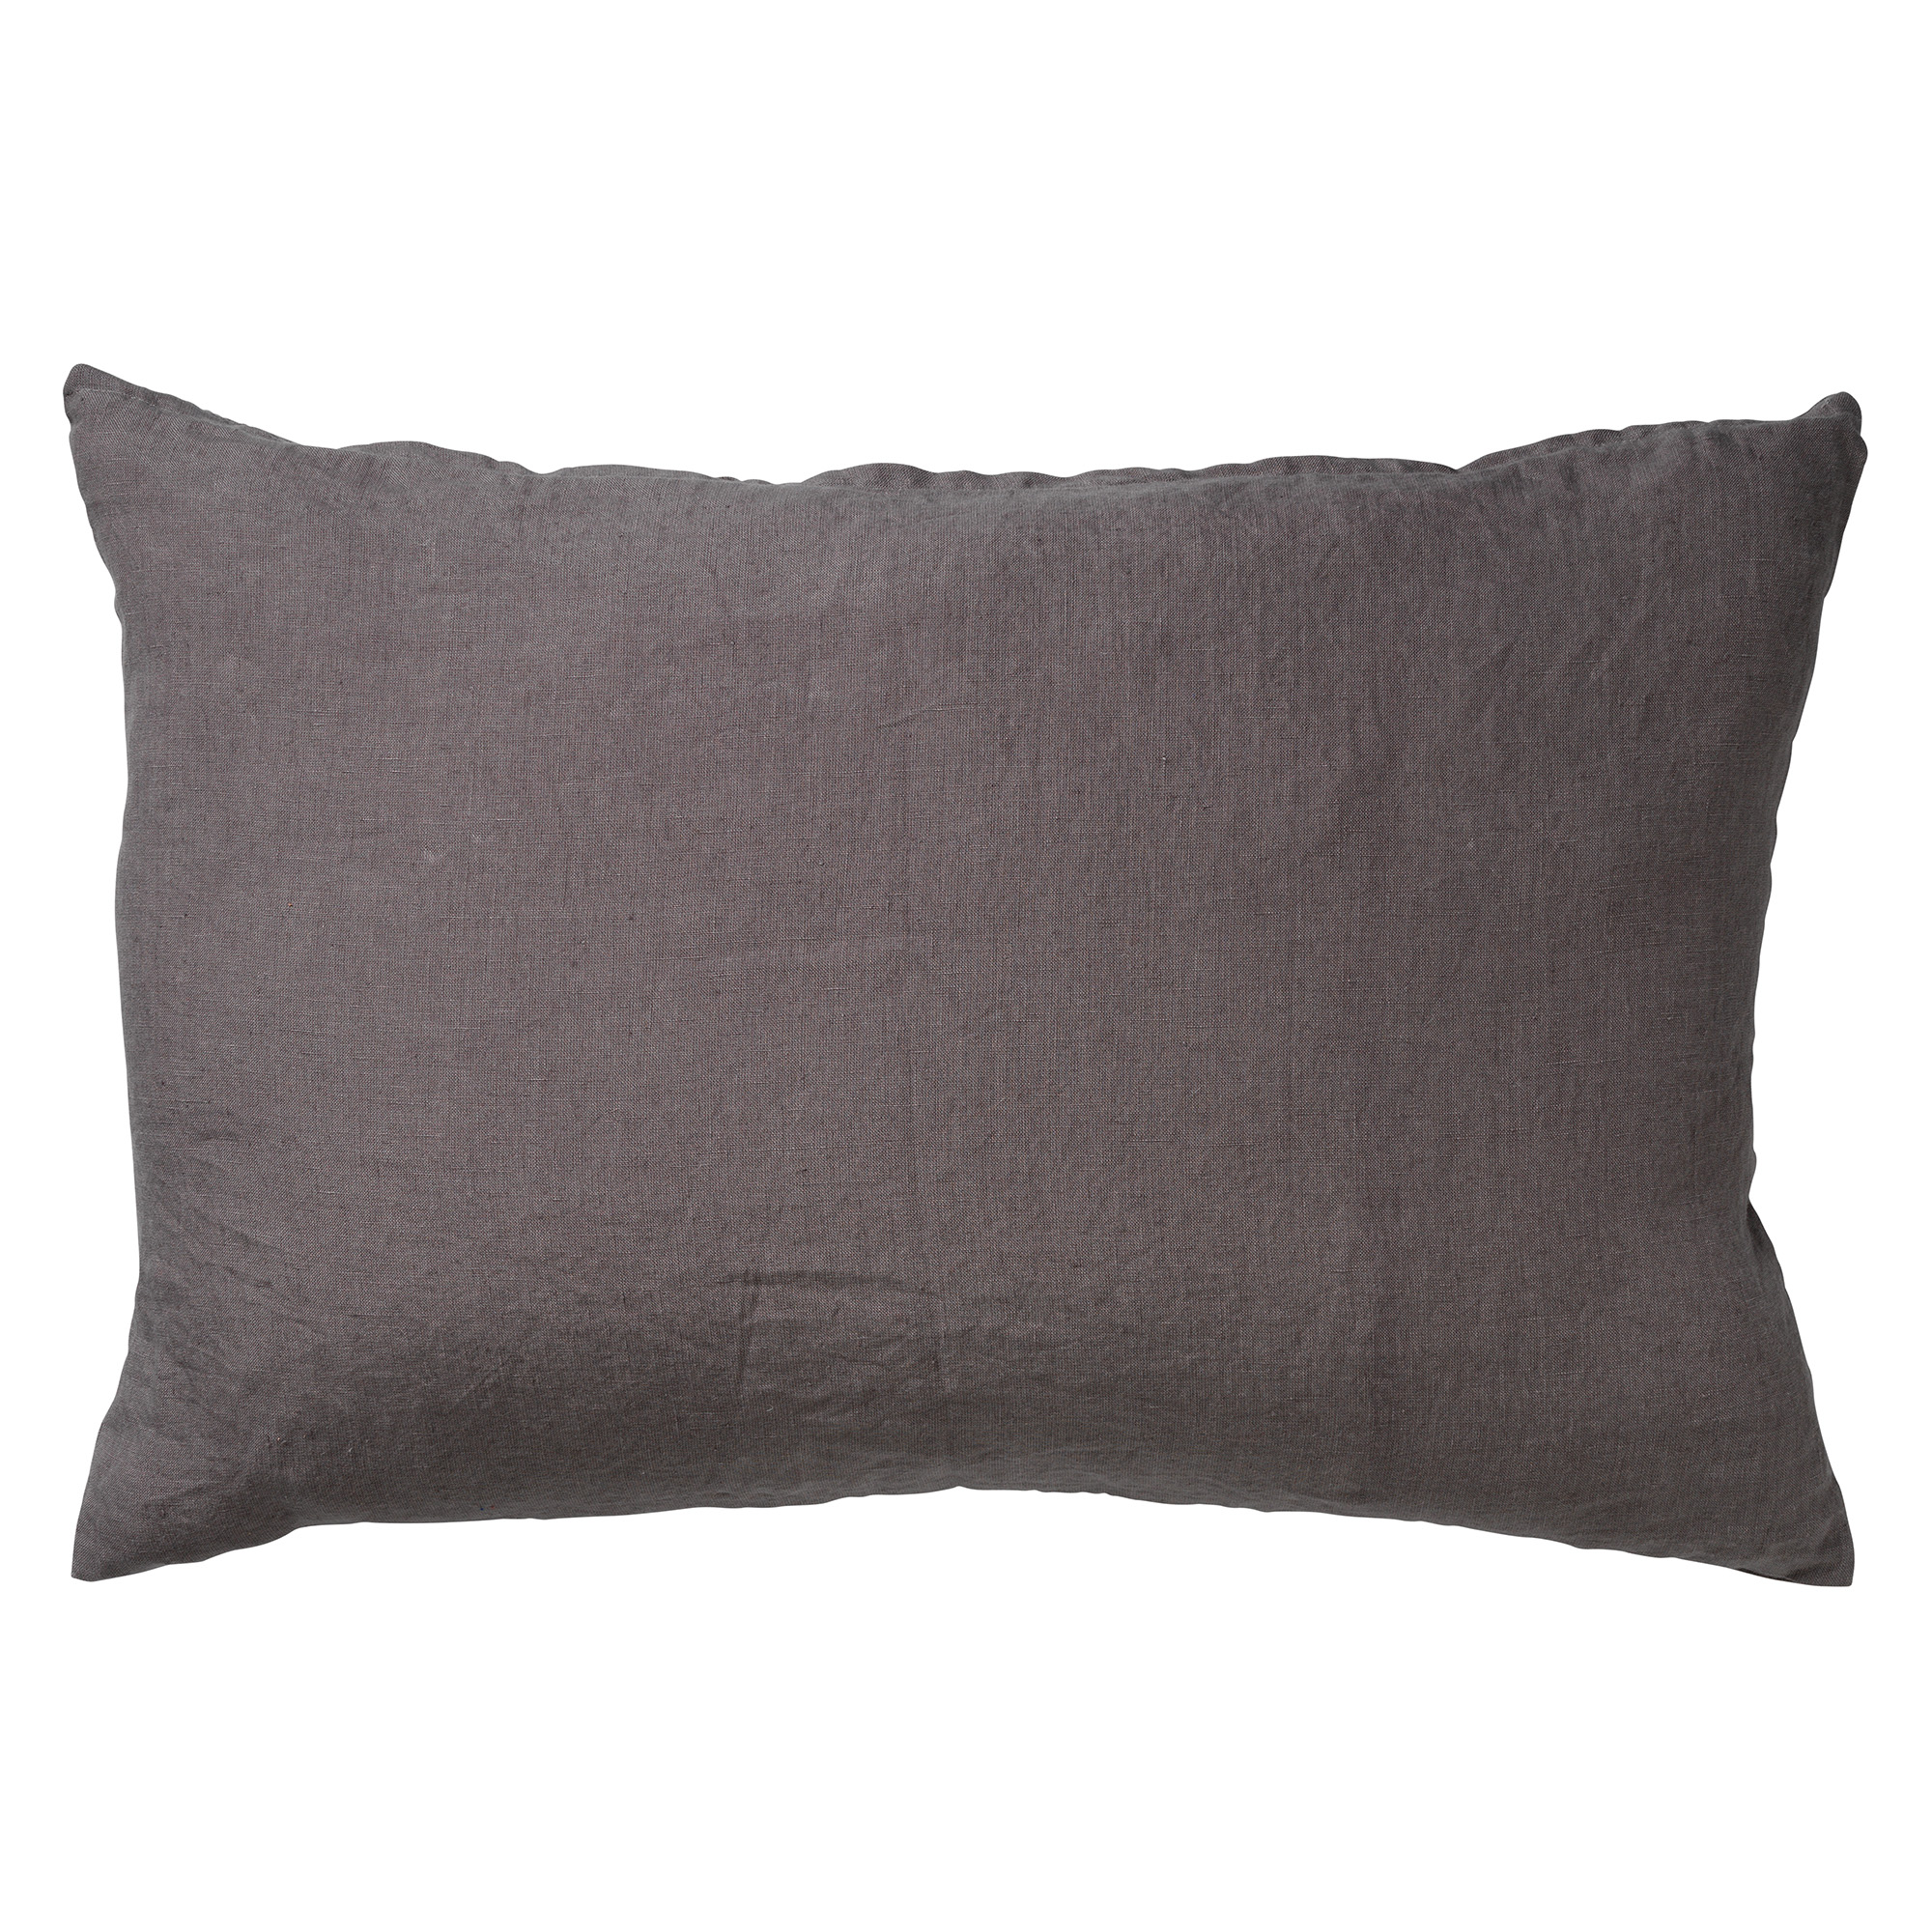 LINN - Kussenhoes LINNEN Charcoal Gray 40x60 cm - grijs